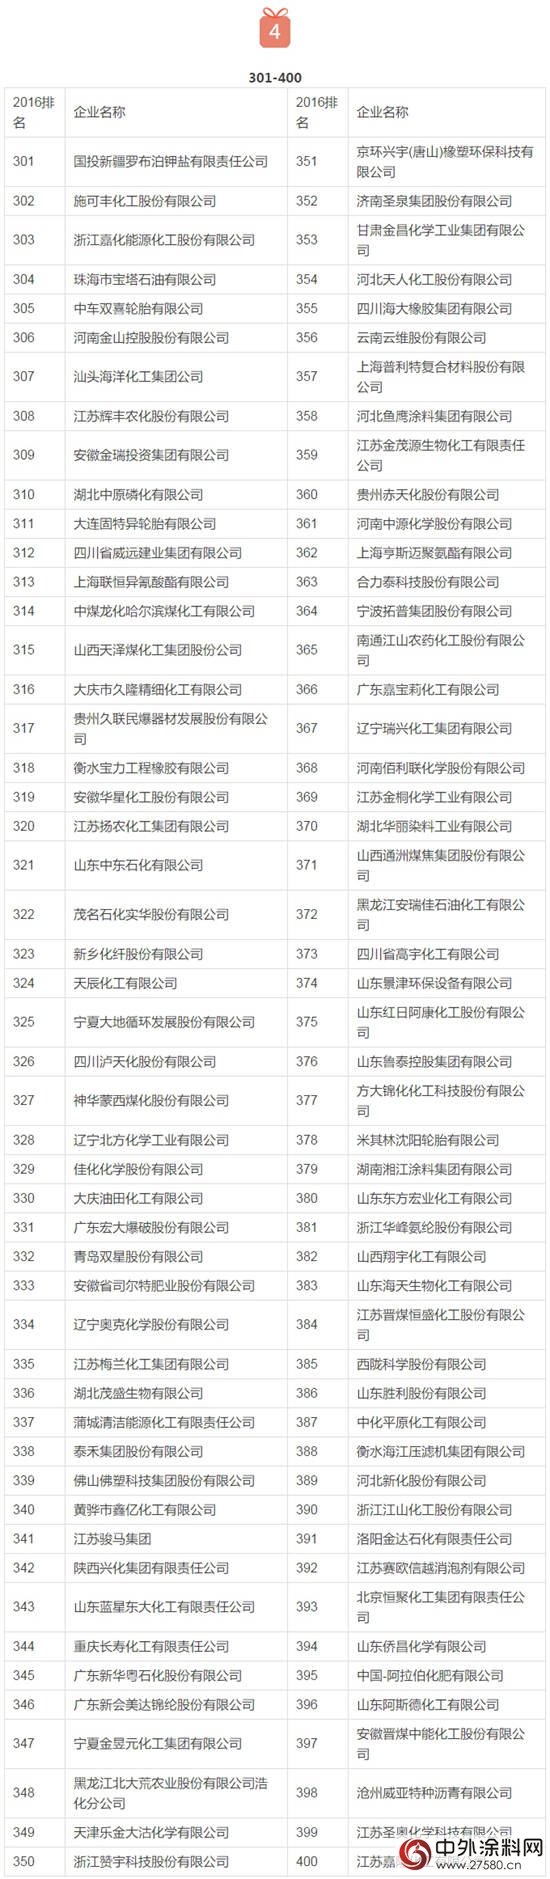 2016中国化工企业500强榜单发布【完整榜单】"119353"